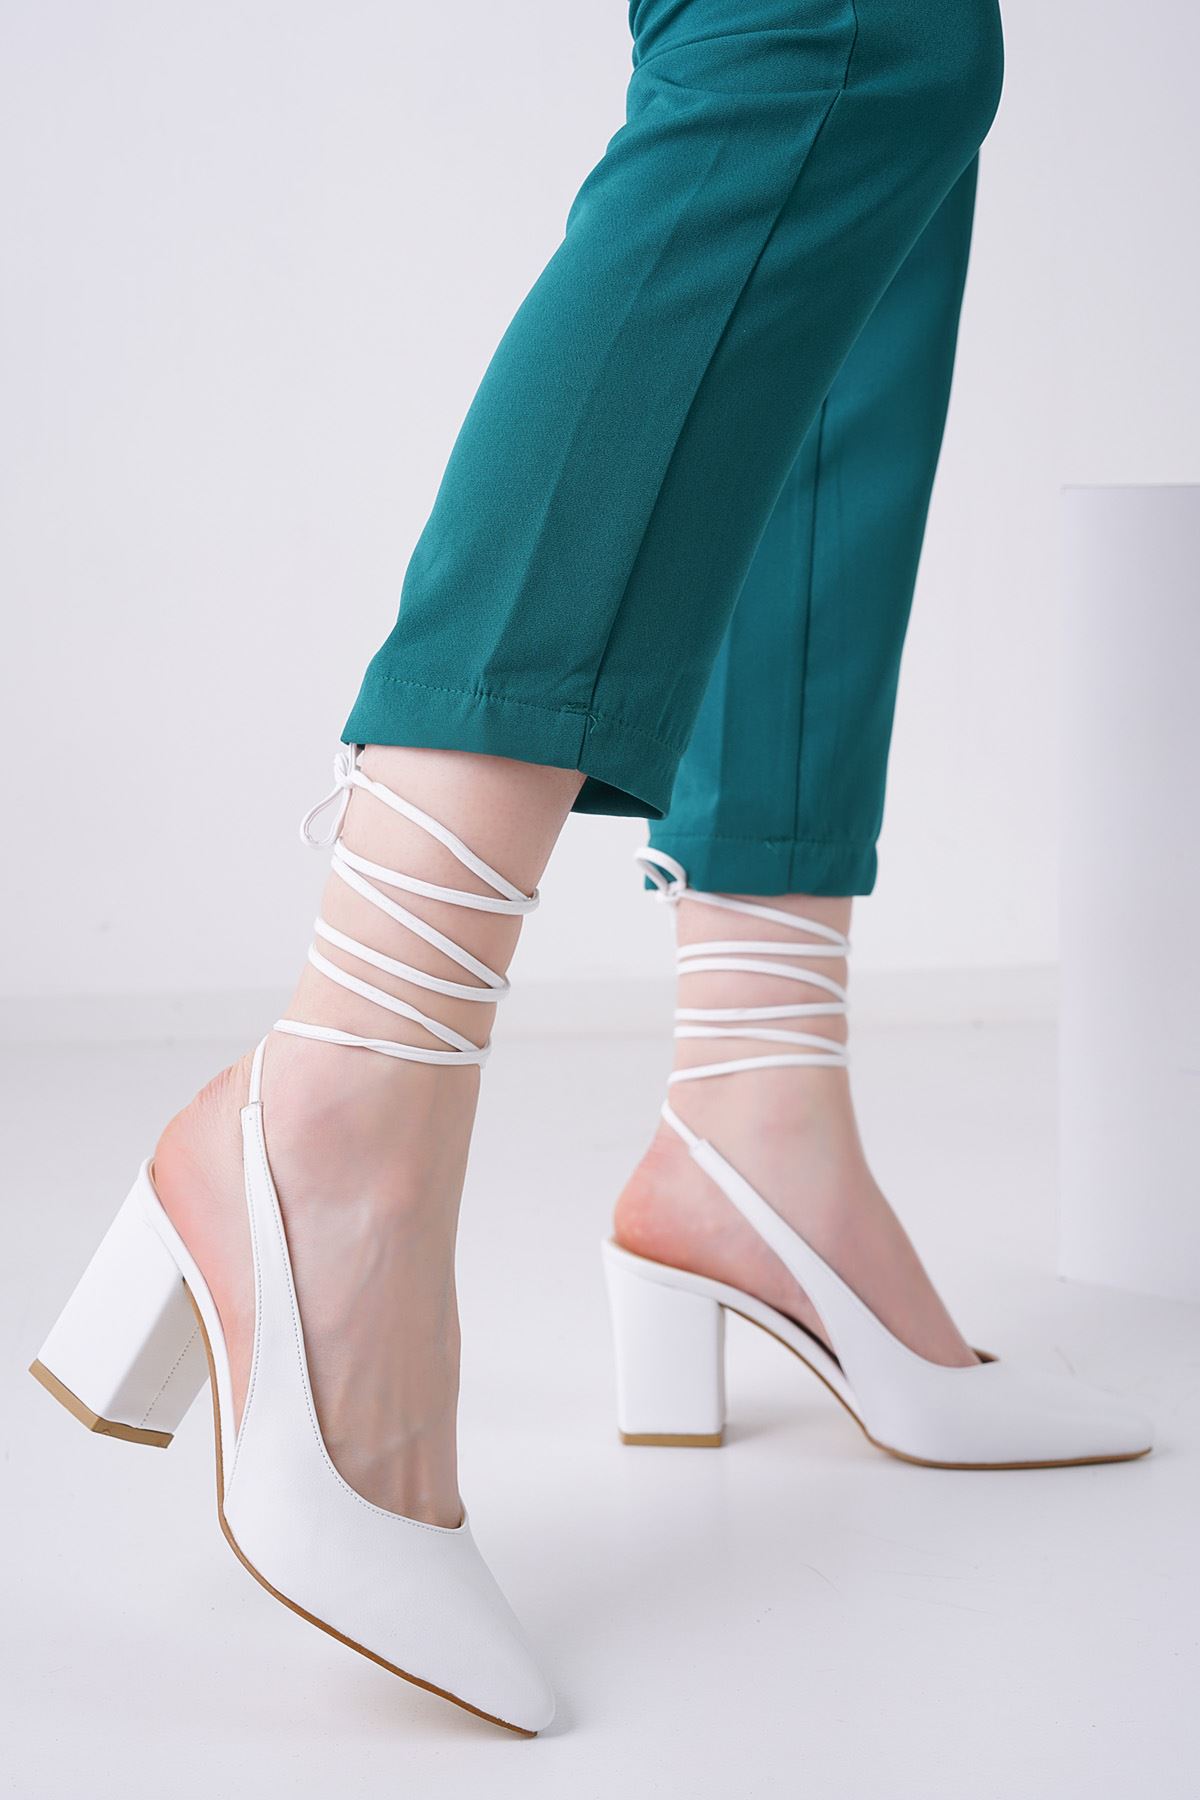 Callie Beyaz Topuklu Kadın Ayakkabı